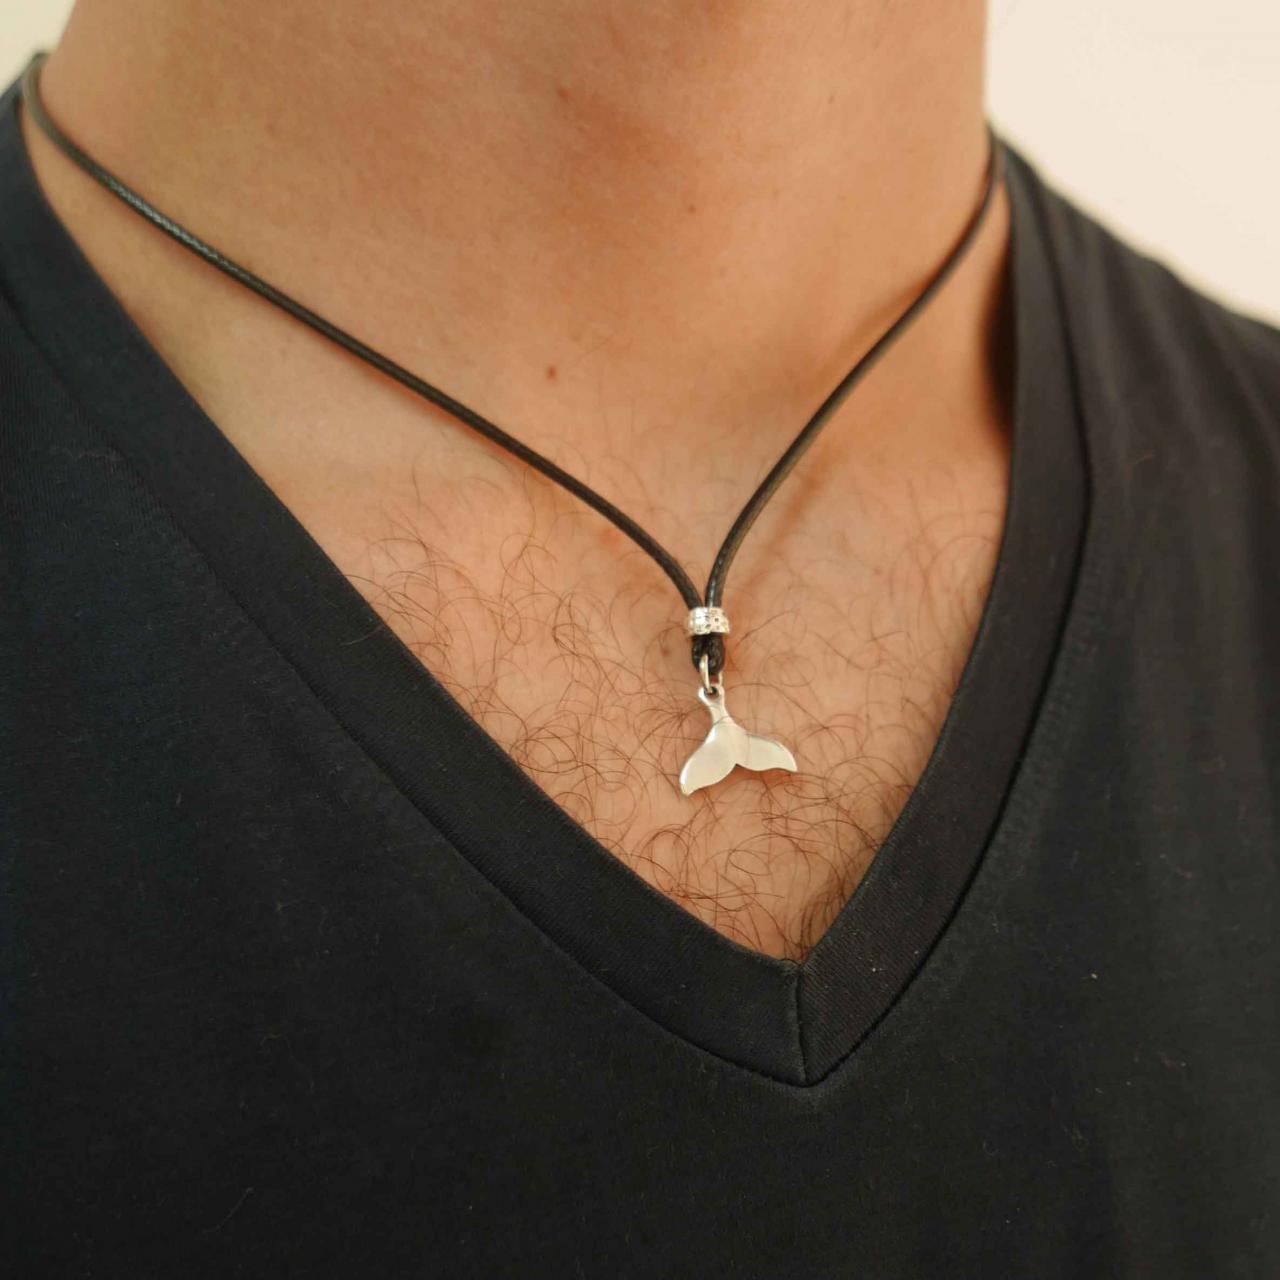 Men's Necklace - Men's Silver Necklace - Men's Whale Tail Necklace - Men's Jewelry - Men's Gift -